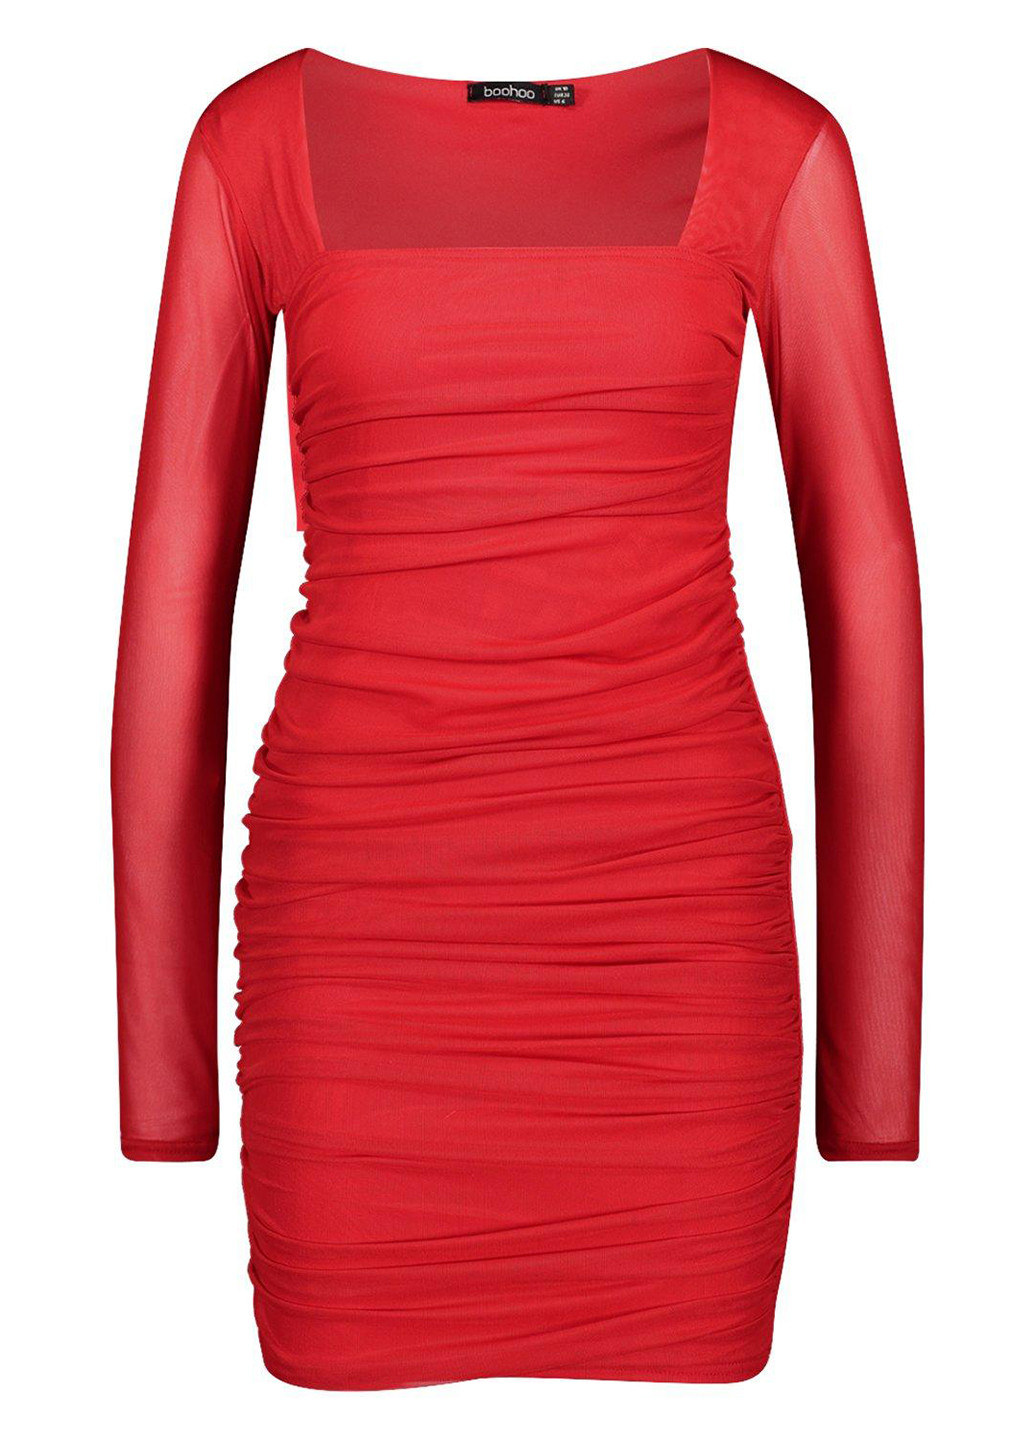 Красное коктейльное платье футляр Boohoo однотонное